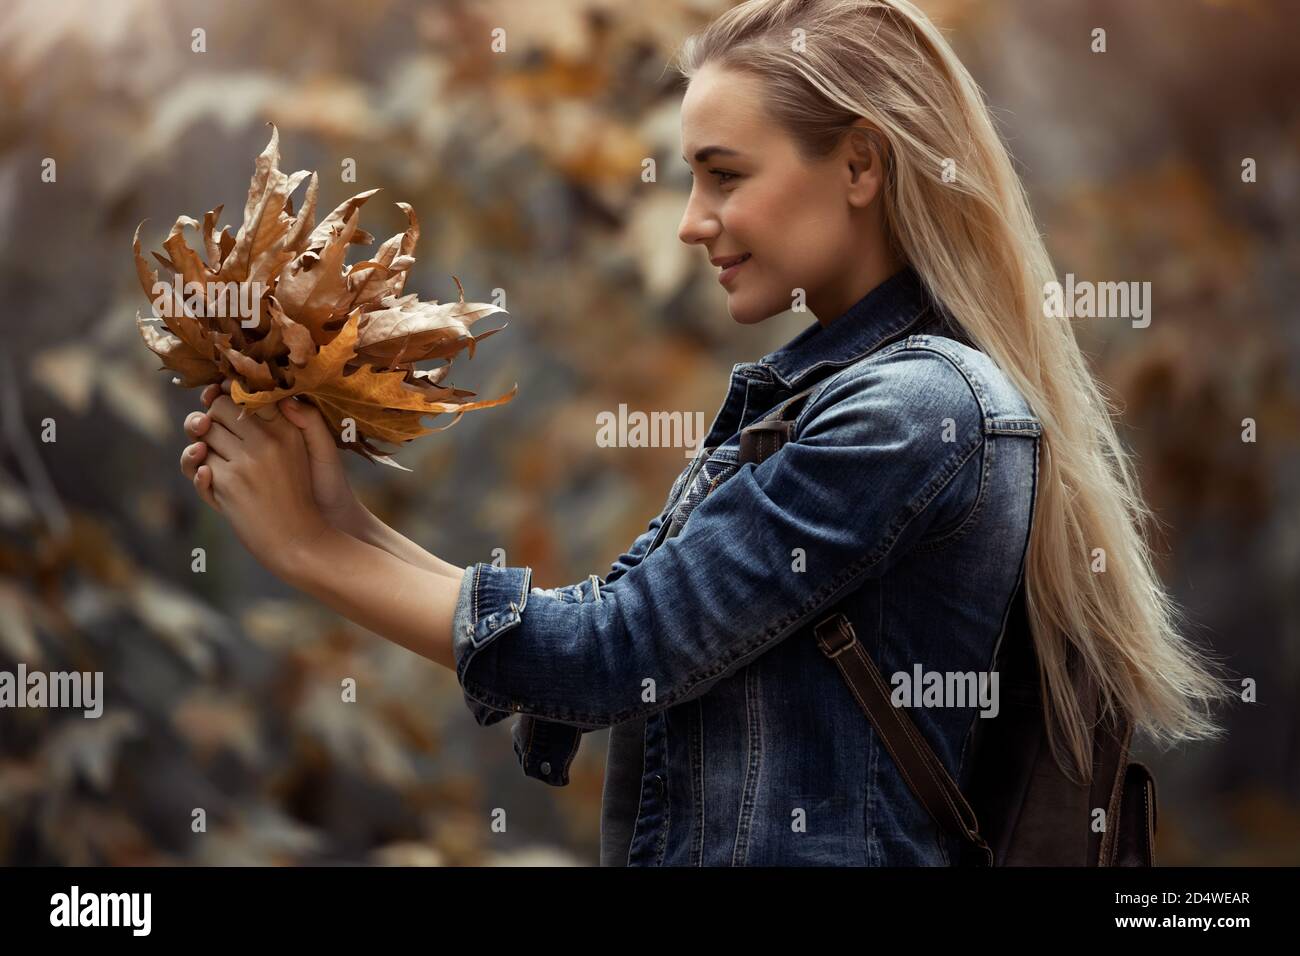 Profil Portrait eines schönen blonden Mädchens mit schönem Blumenstrauß von trockenen Baumblättern im Park. Genießen Sie die Schönheit der Natur im Herbst. Stockfoto